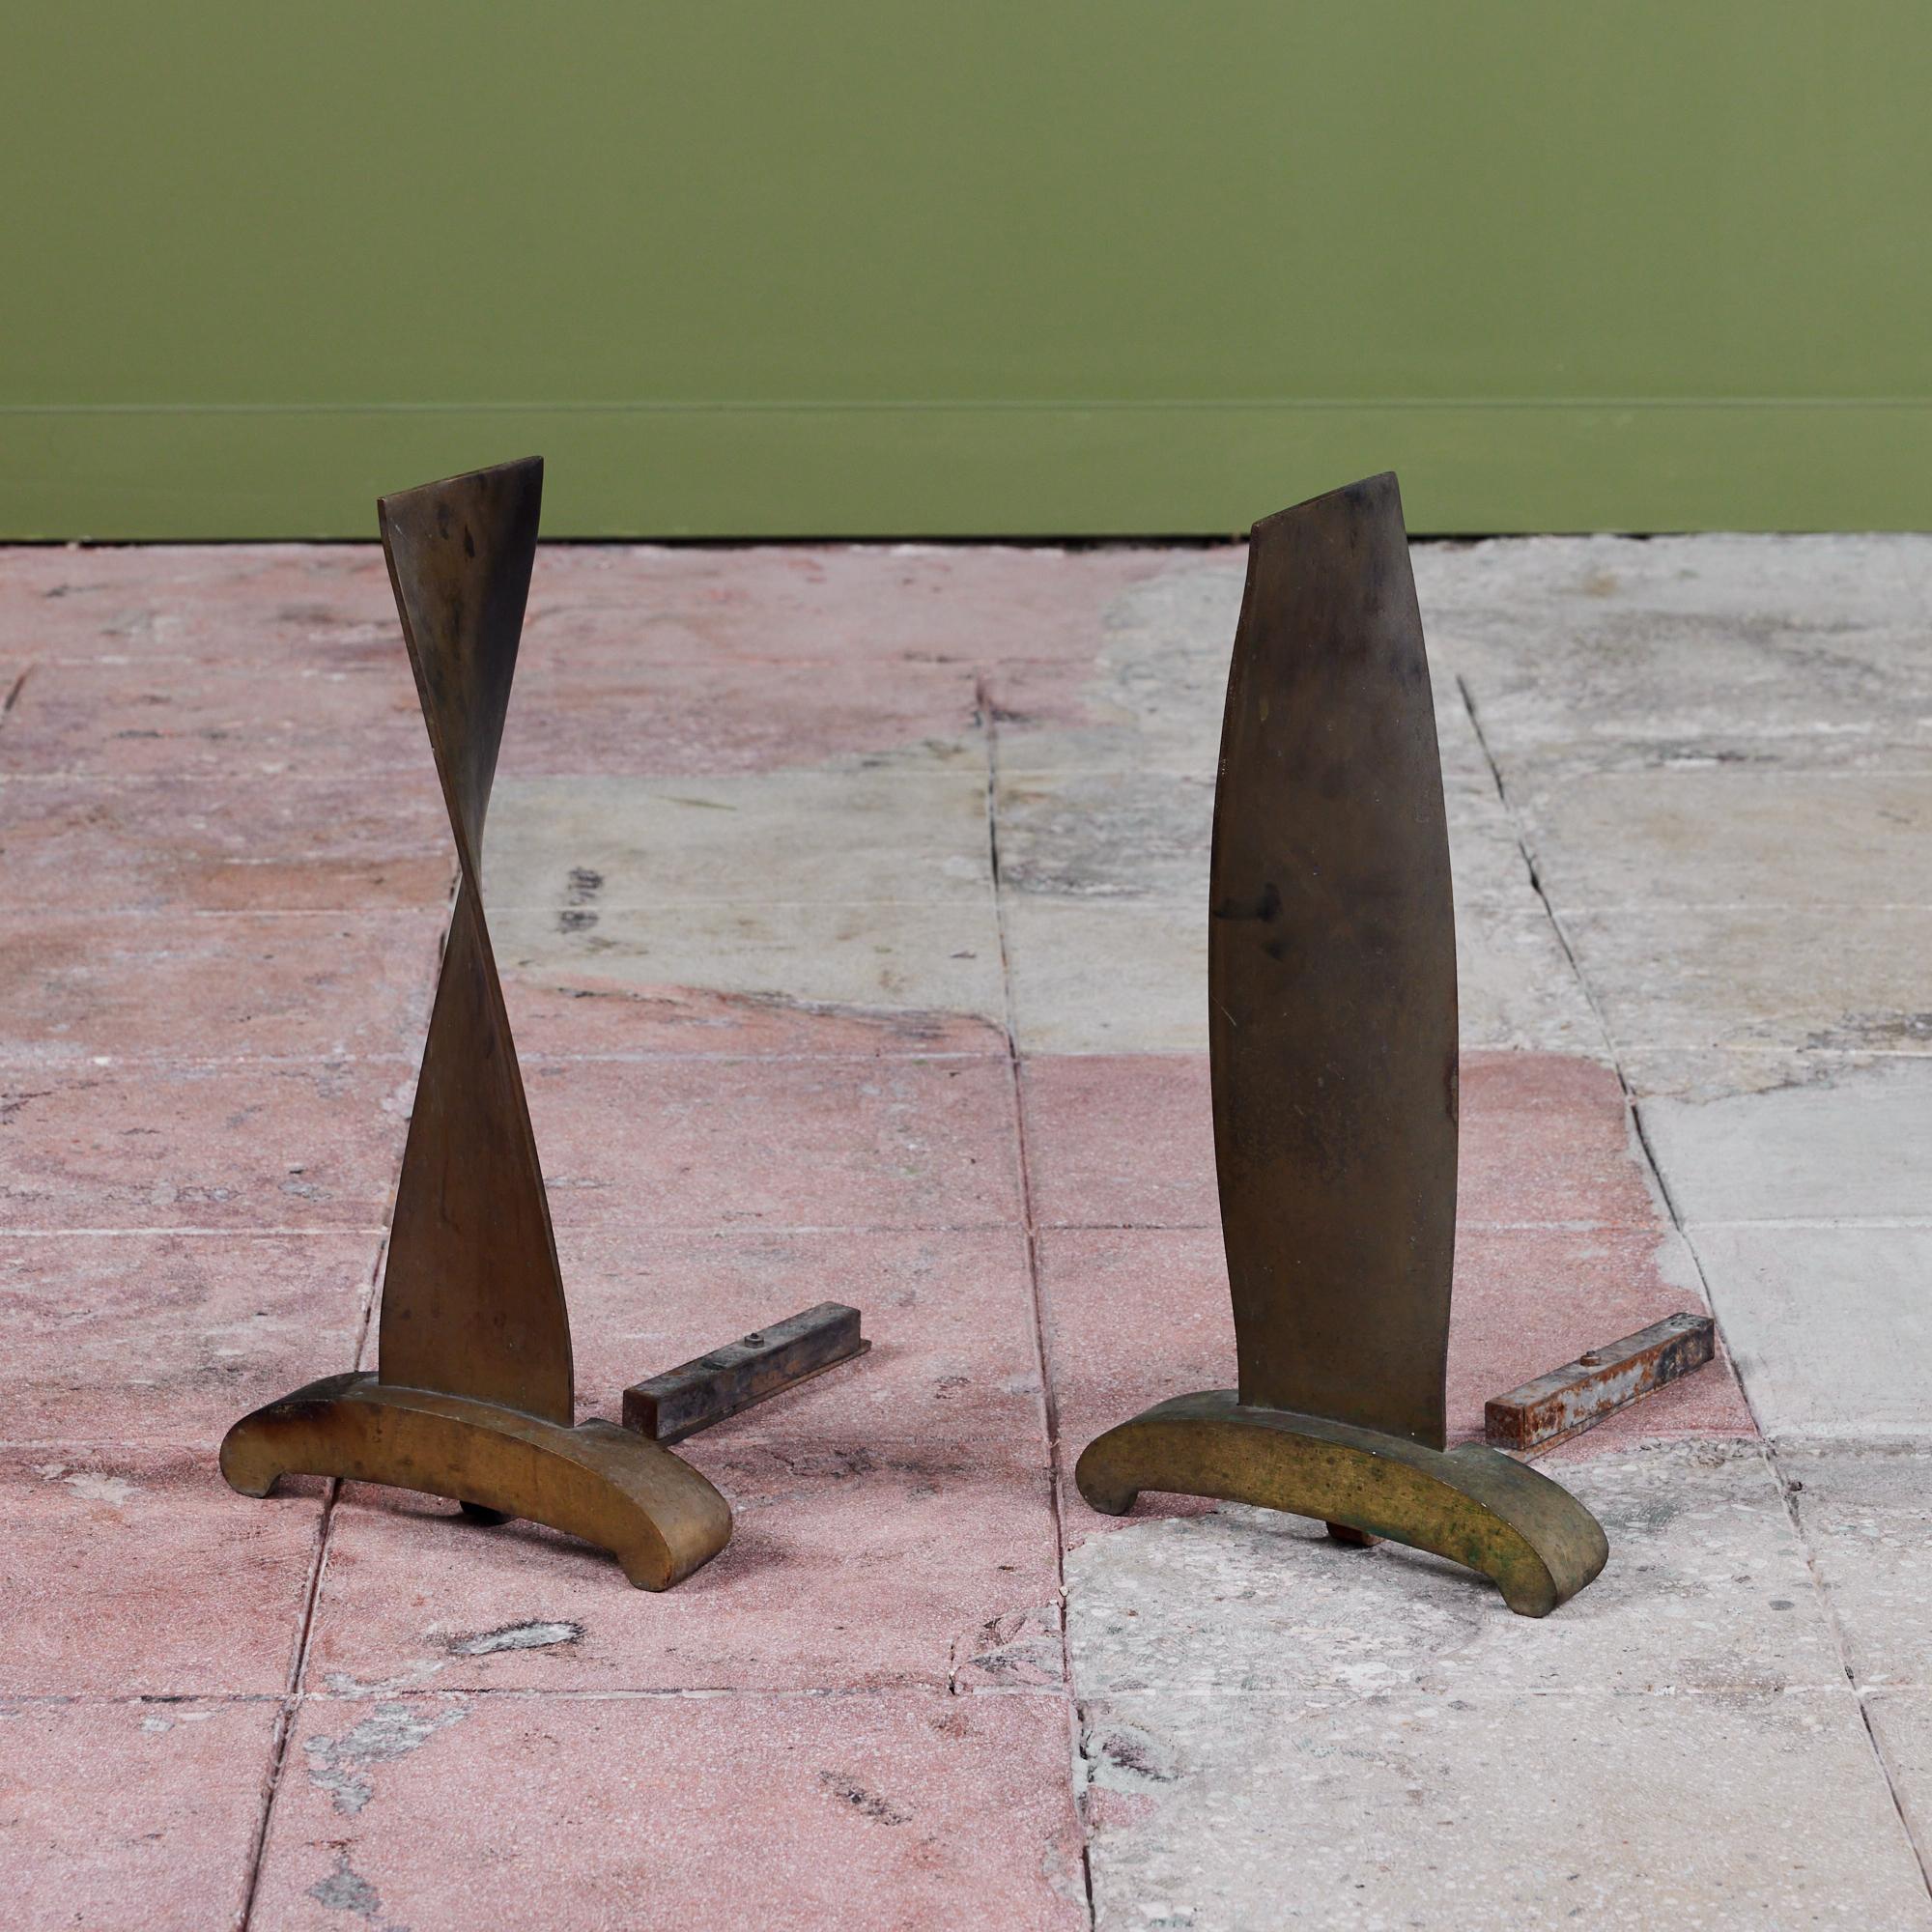 Ein Paar modernistische Bronze-Andirons. Die Andirons haben eine bandförmige, gedrehte Vorderseite mit einem geschwungenen Fußteil. Ein wunderschönes Detail, das Ihren Kamin vervollständigt. 

Abmessungen
9,6